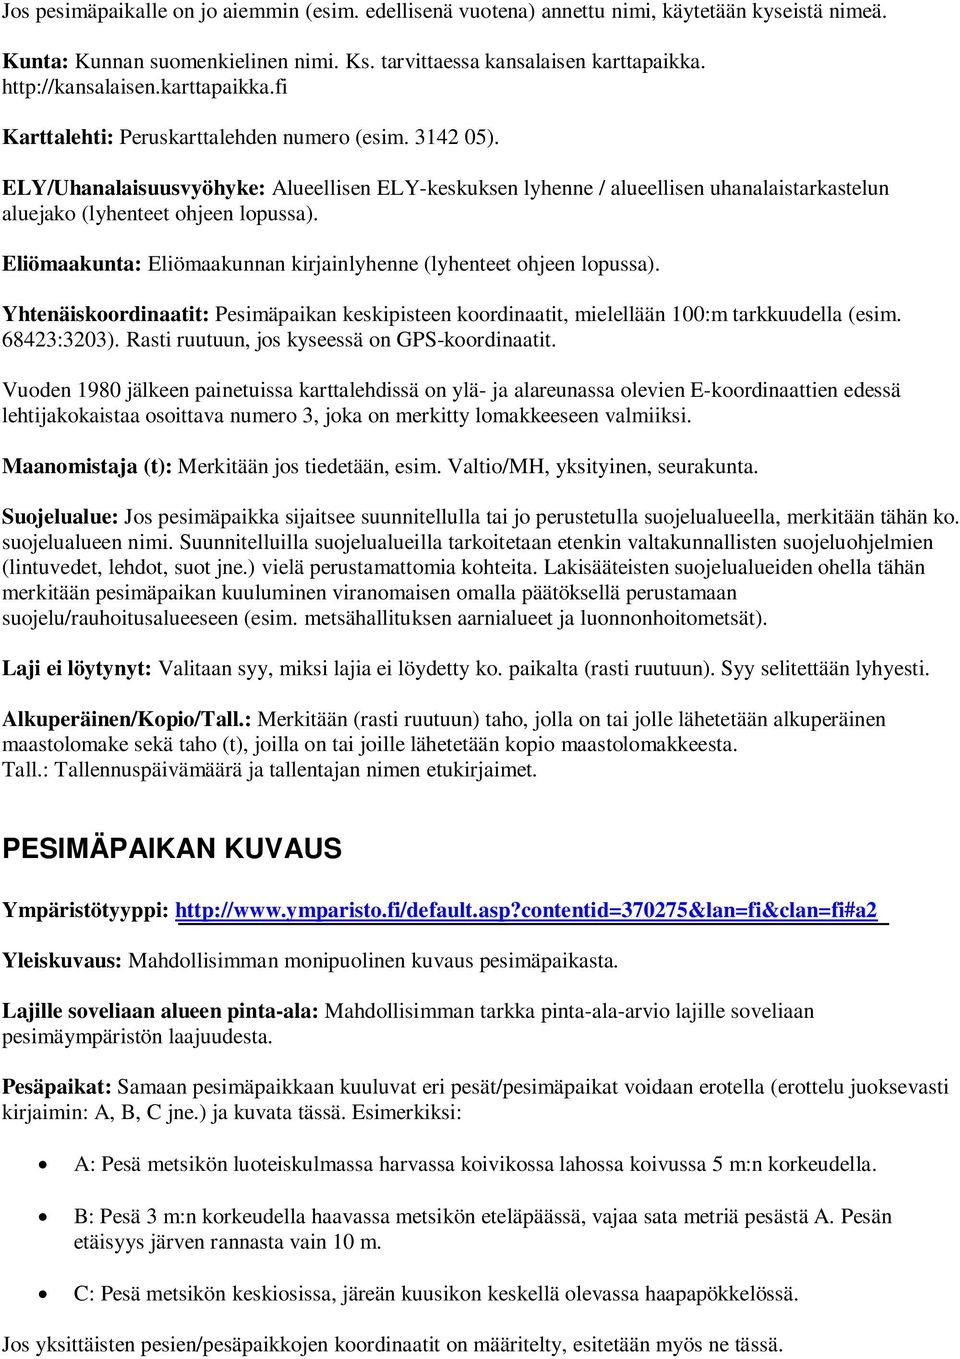 ELY/Uhanalaisuusvyöhyke: Alueellisen ELY-keskuksen lyhenne / alueellisen uhanalaistarkastelun aluejako (lyhenteet ohjeen lopussa).